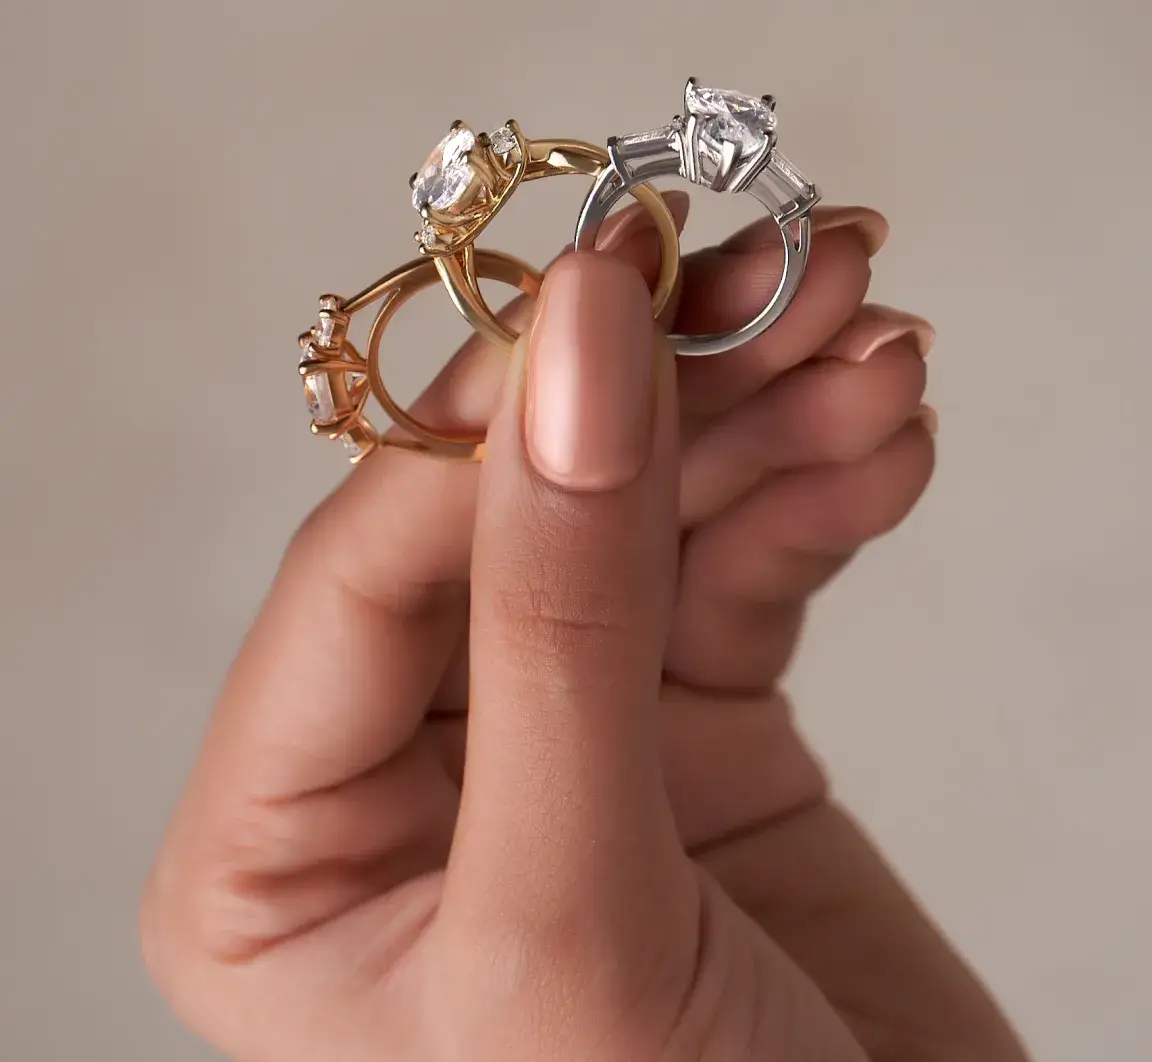 Stella Grace Women's Twist Wedding Ring